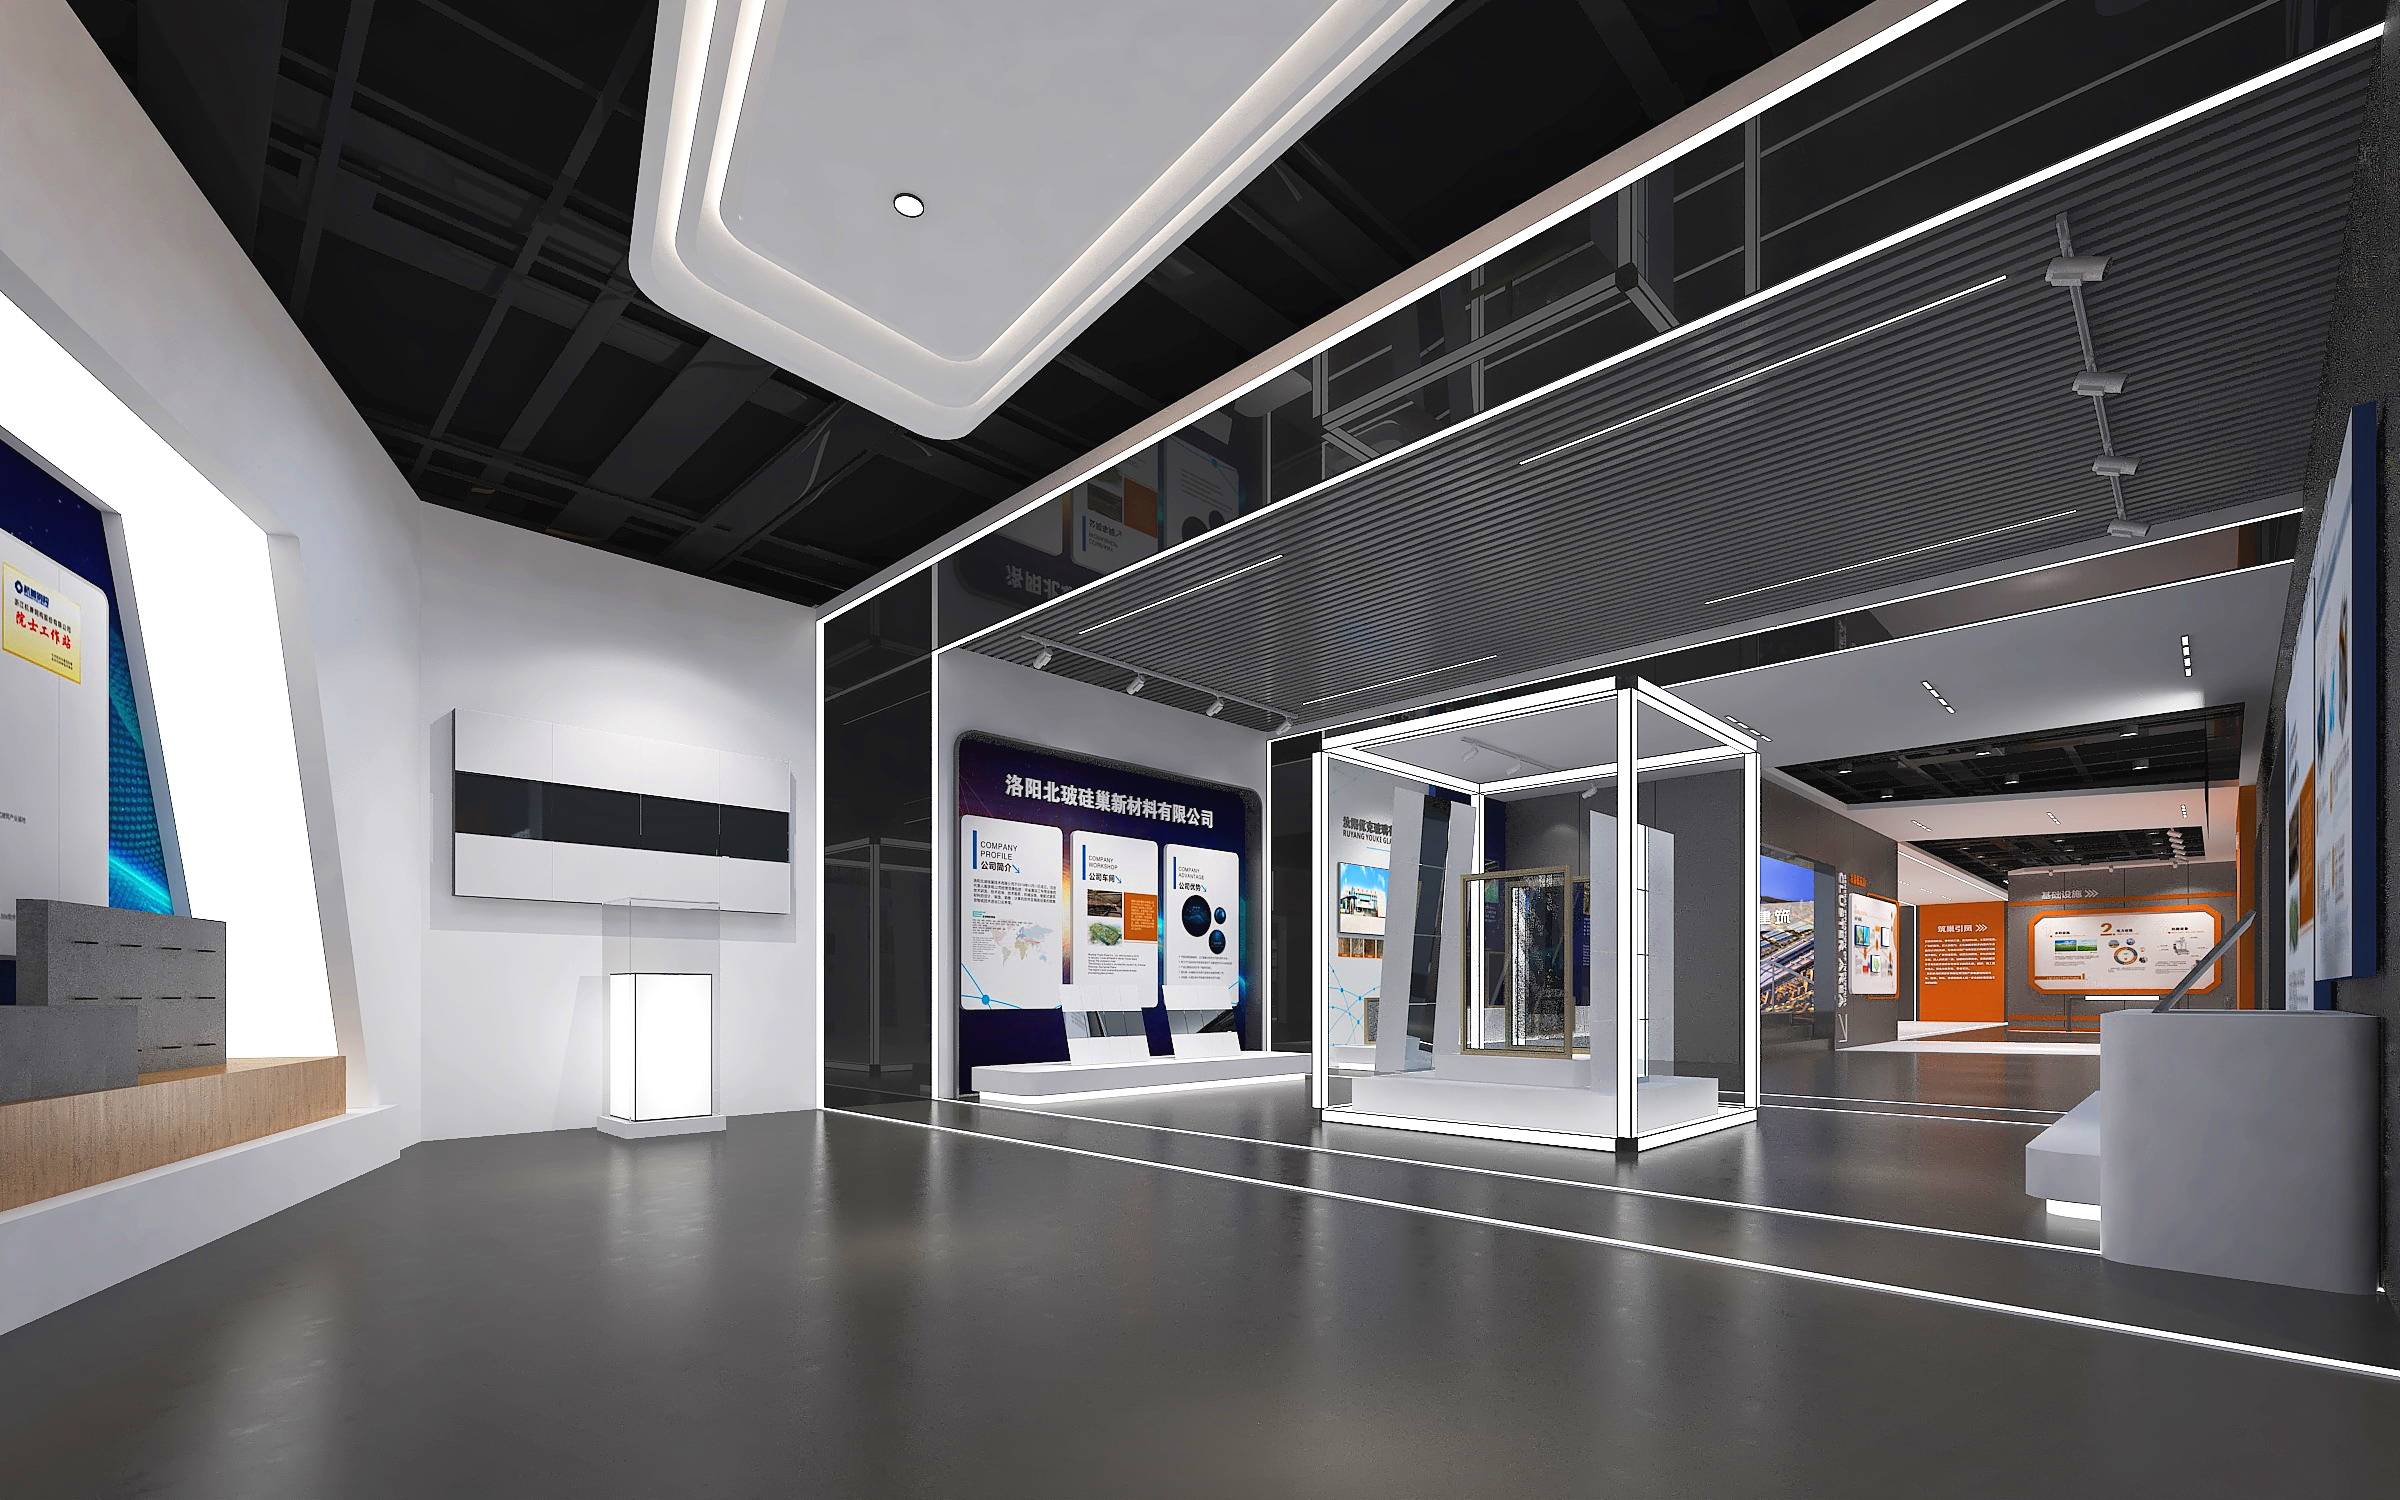 产业园区企业文化展厅策划设计案例分享